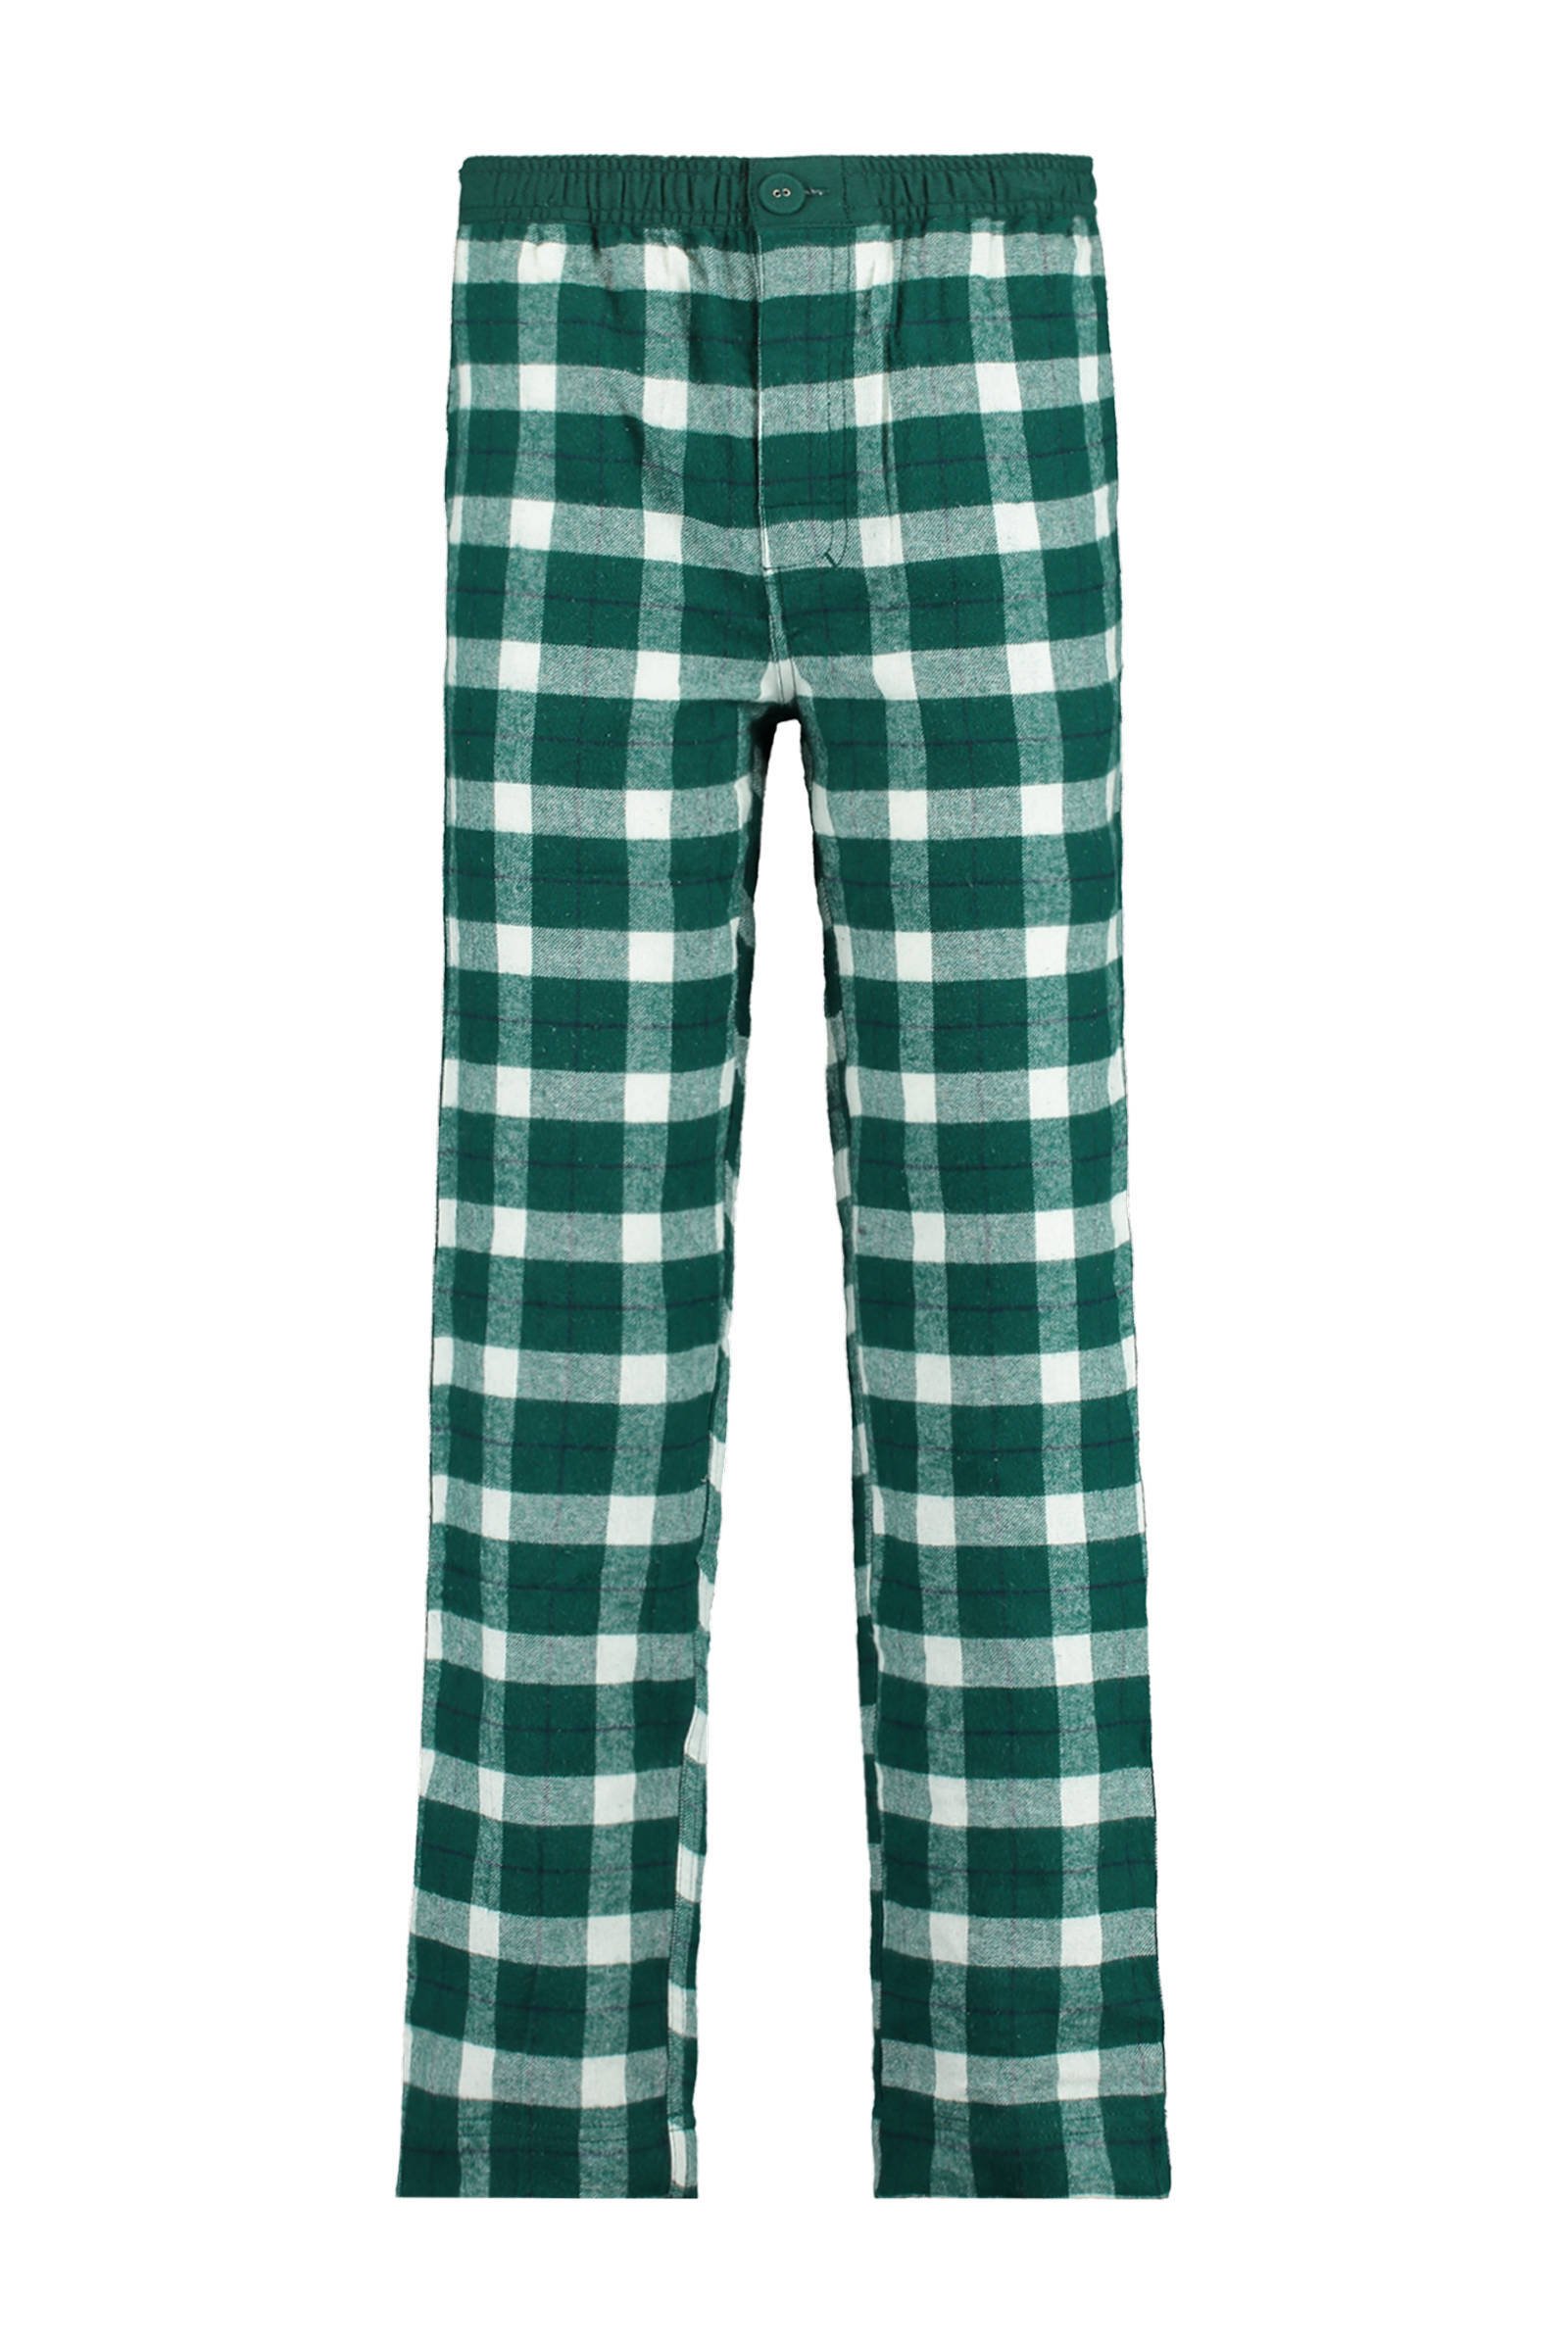 America Today Junior geruite pyjamabroek groen online kopen